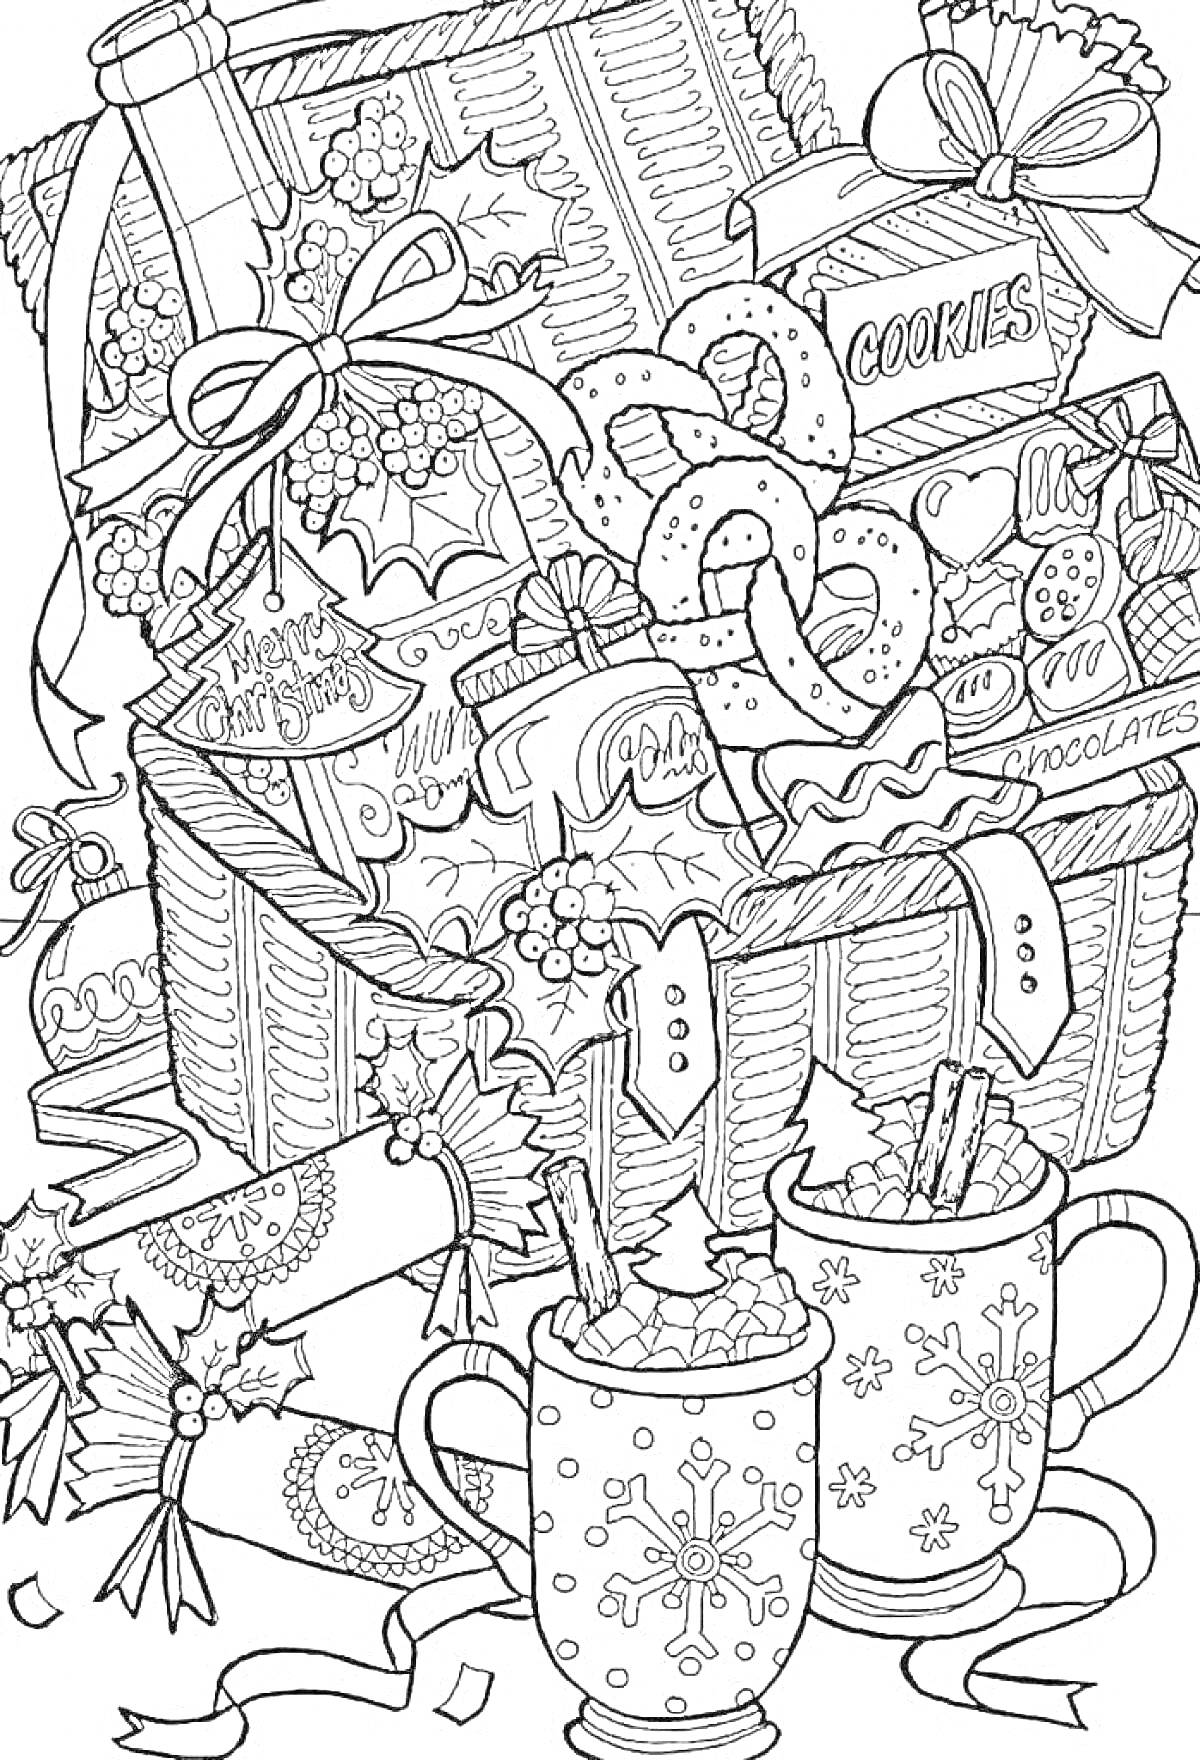 Корзина с рождественскими сладостями, перемотанные лентами подарки, кружки какао с маршмеллоу, печенье, конфеты, шоколад, украшения из омелы